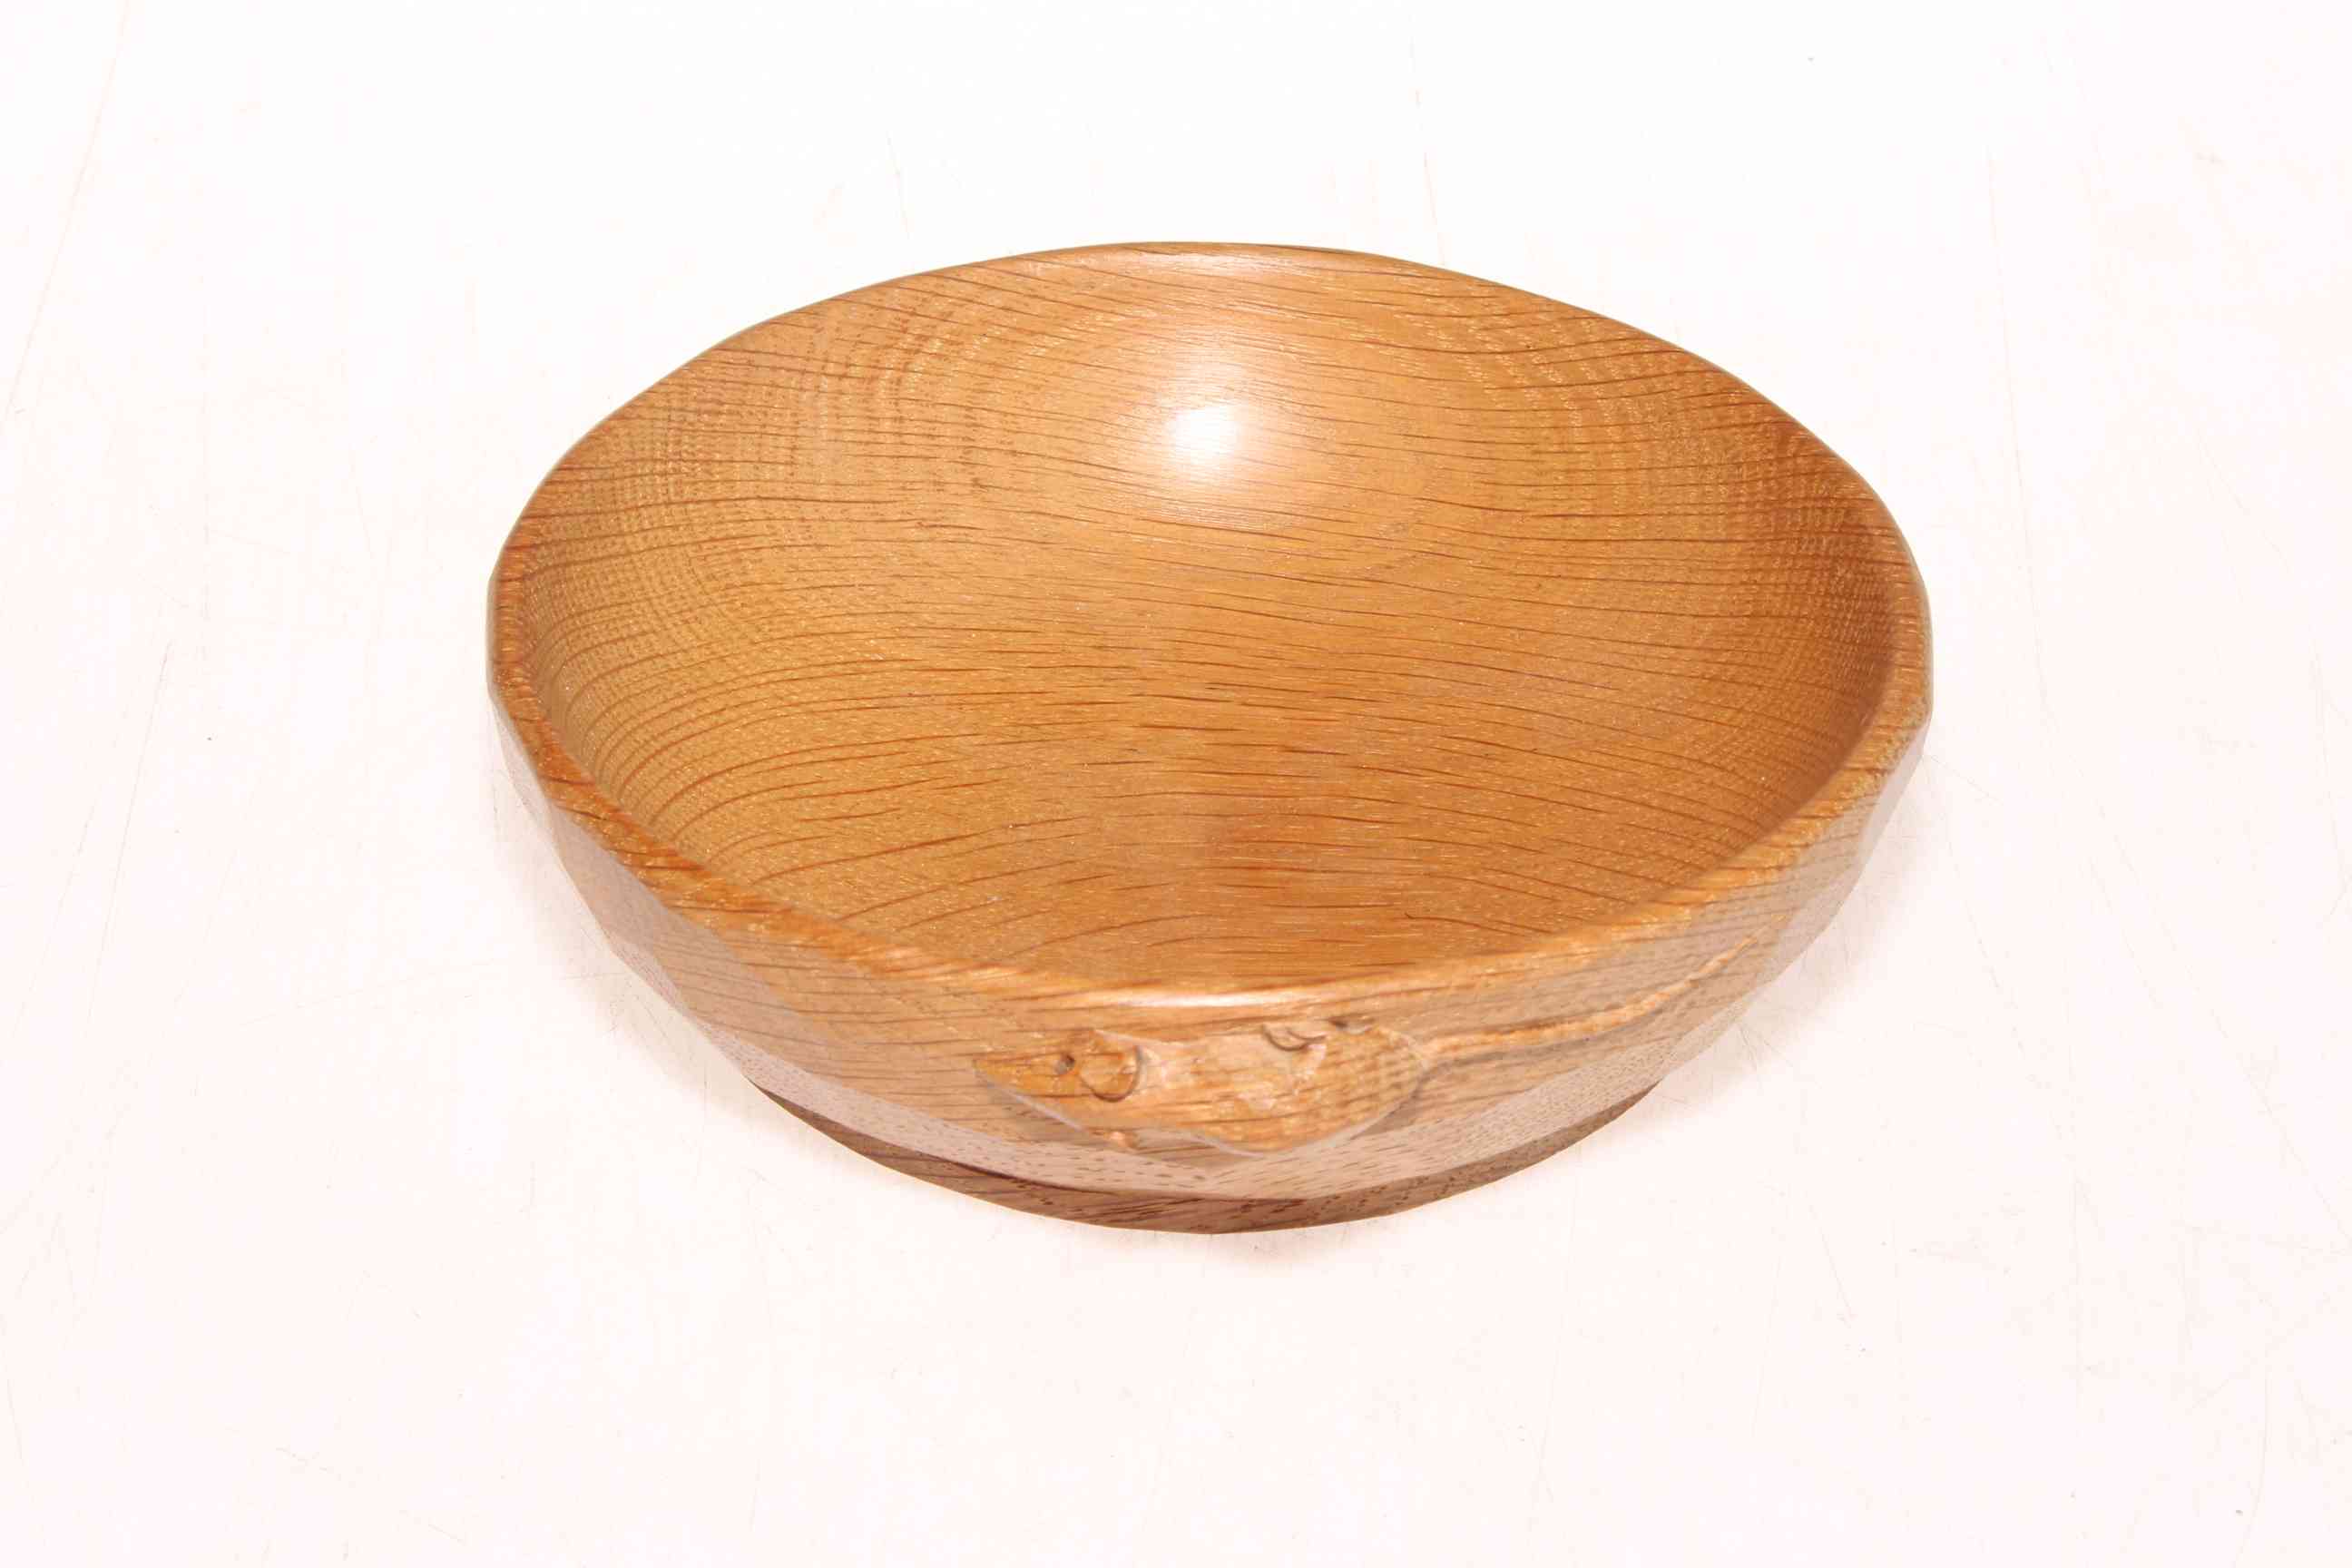 Robert Thompson of Kilburn 'Mouseman' oak nut bowl, 14.5cm diameter.